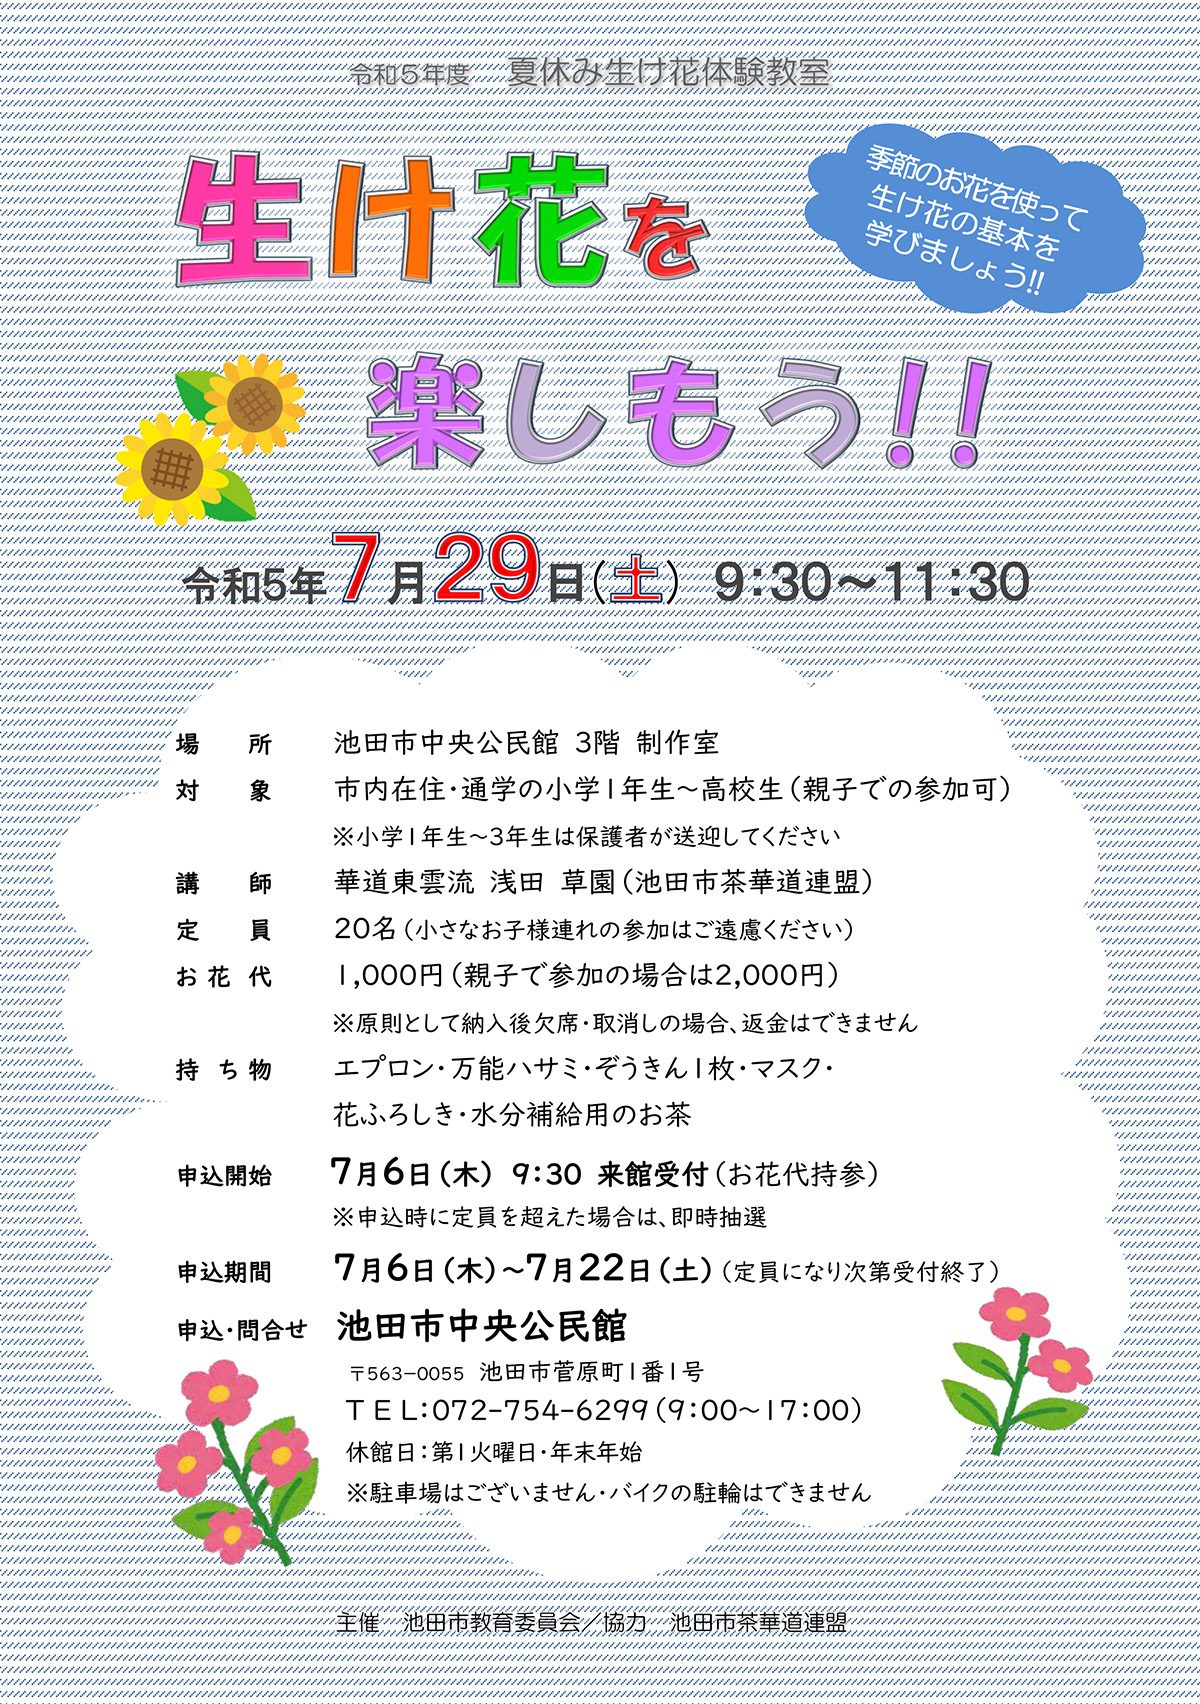 【夏休み生け花体験教室】生け花を楽しもう!